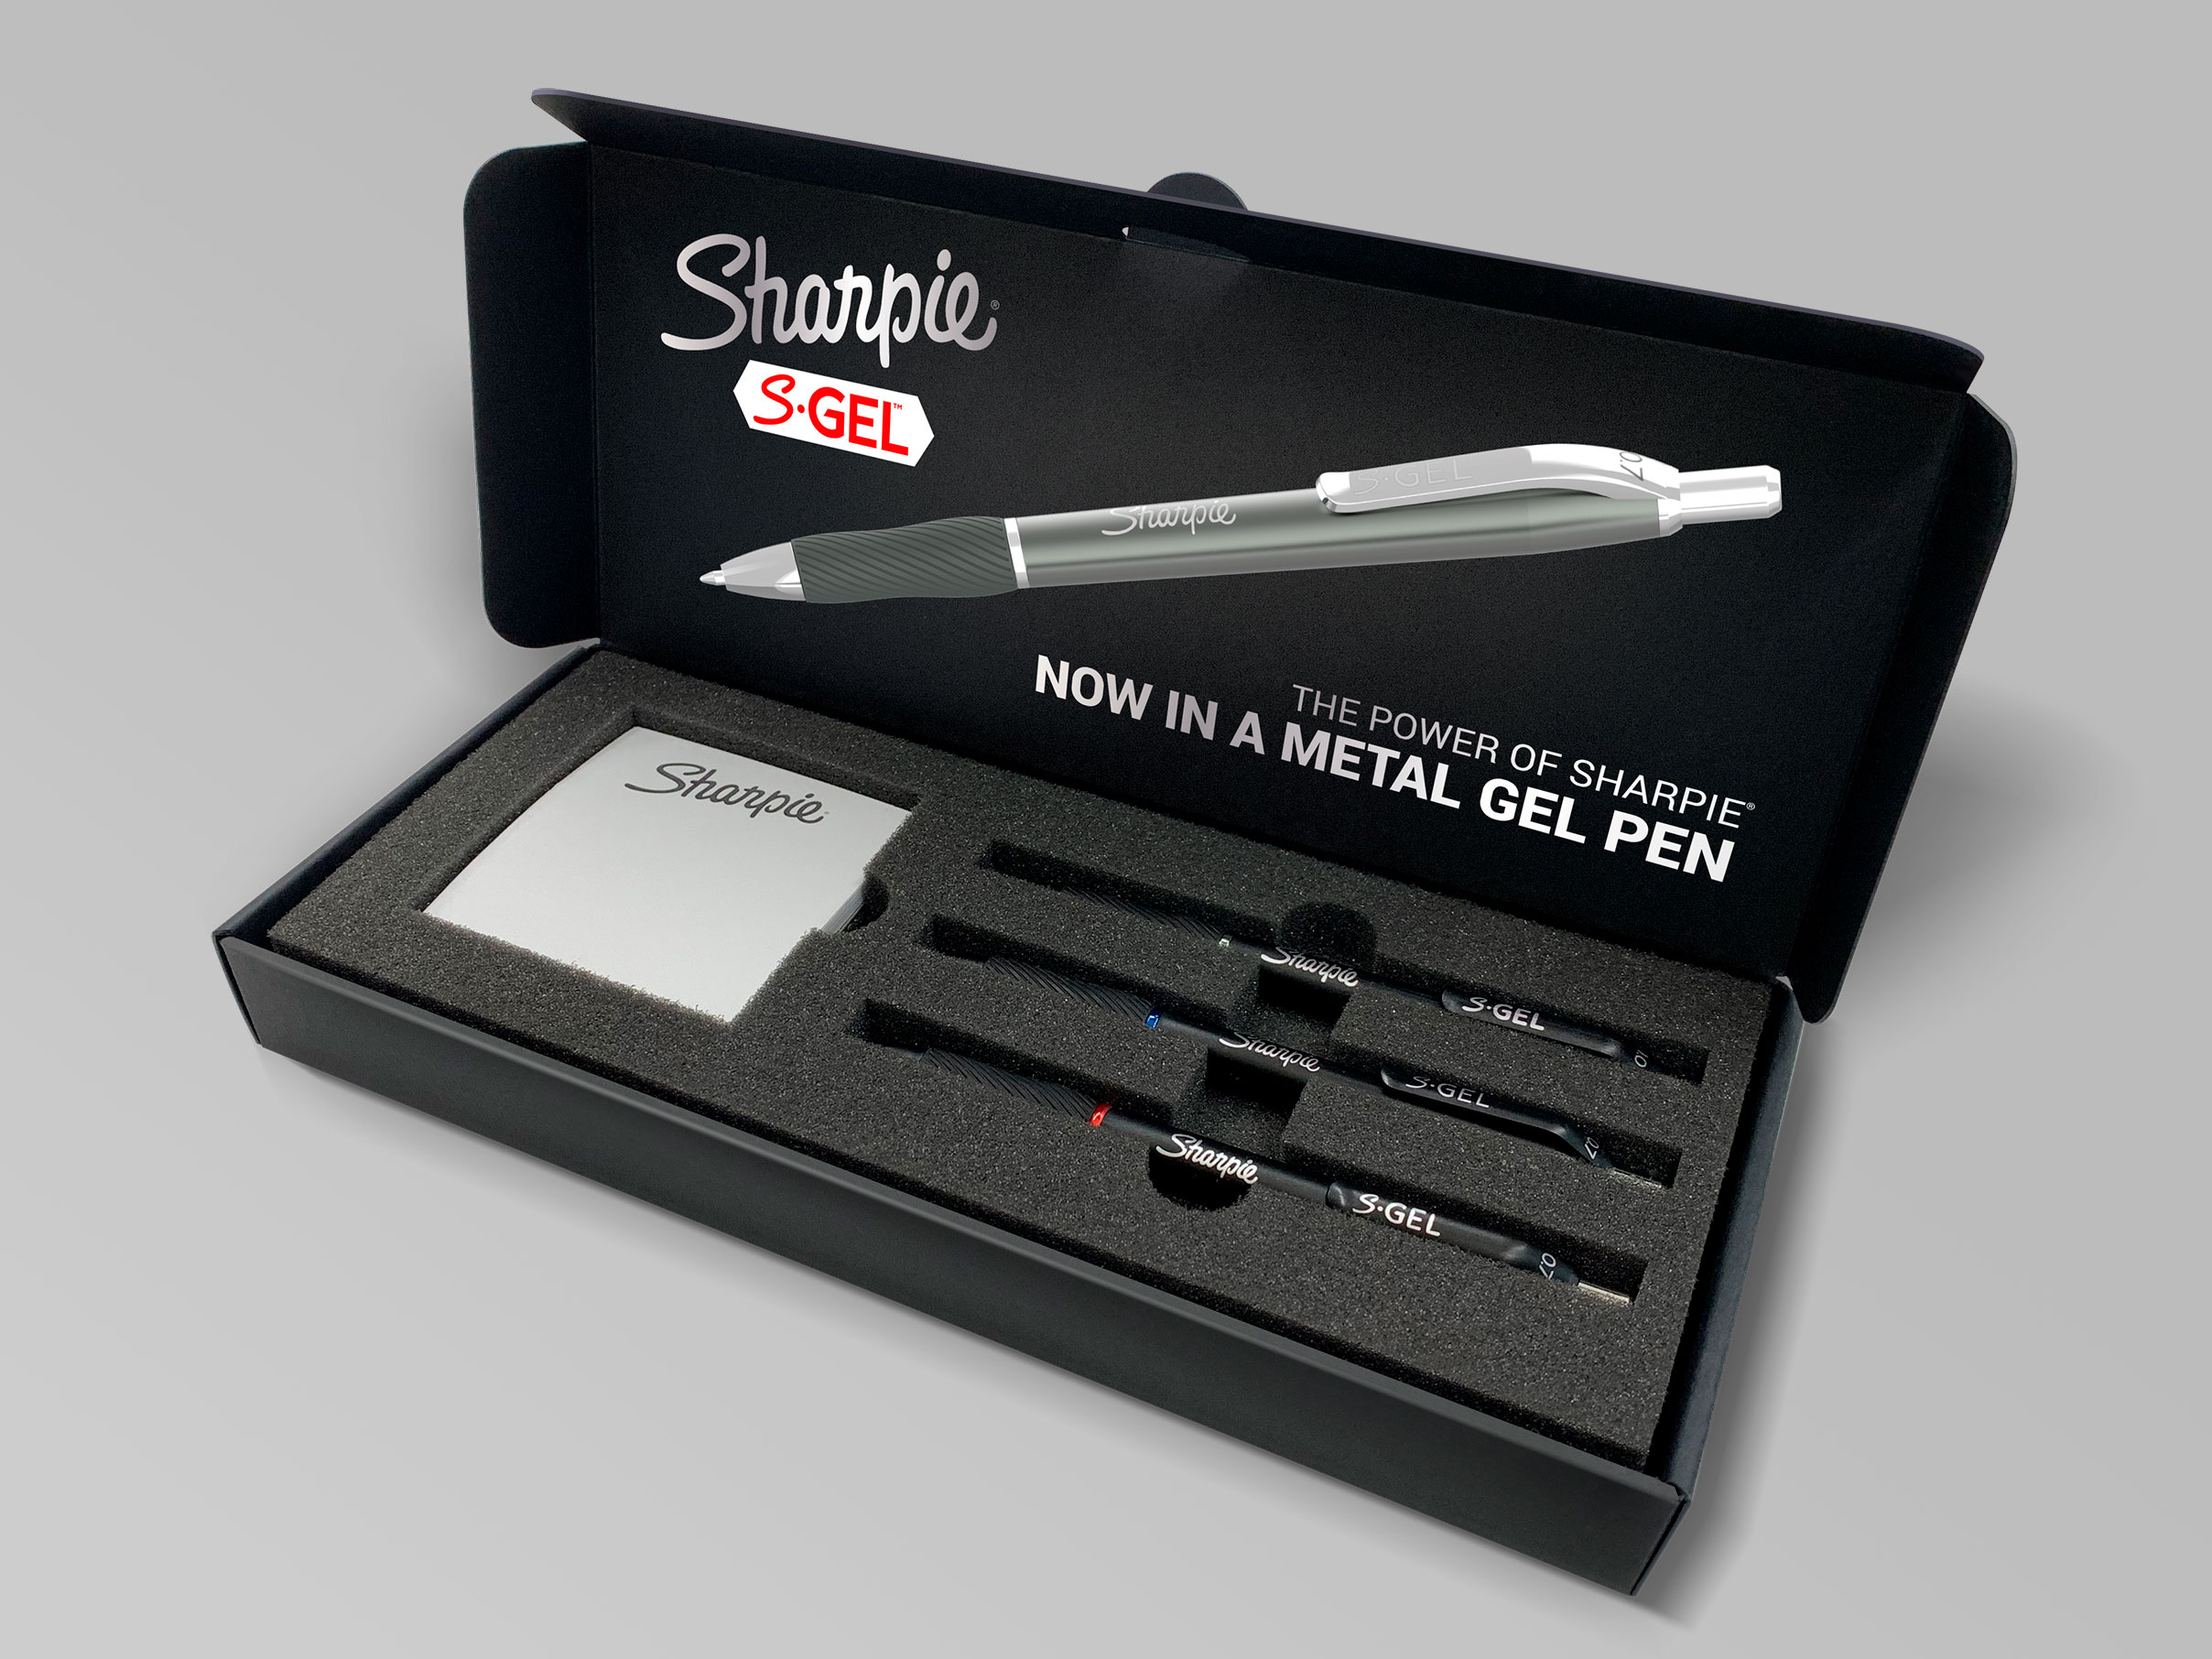 Sharpie pen launch kit